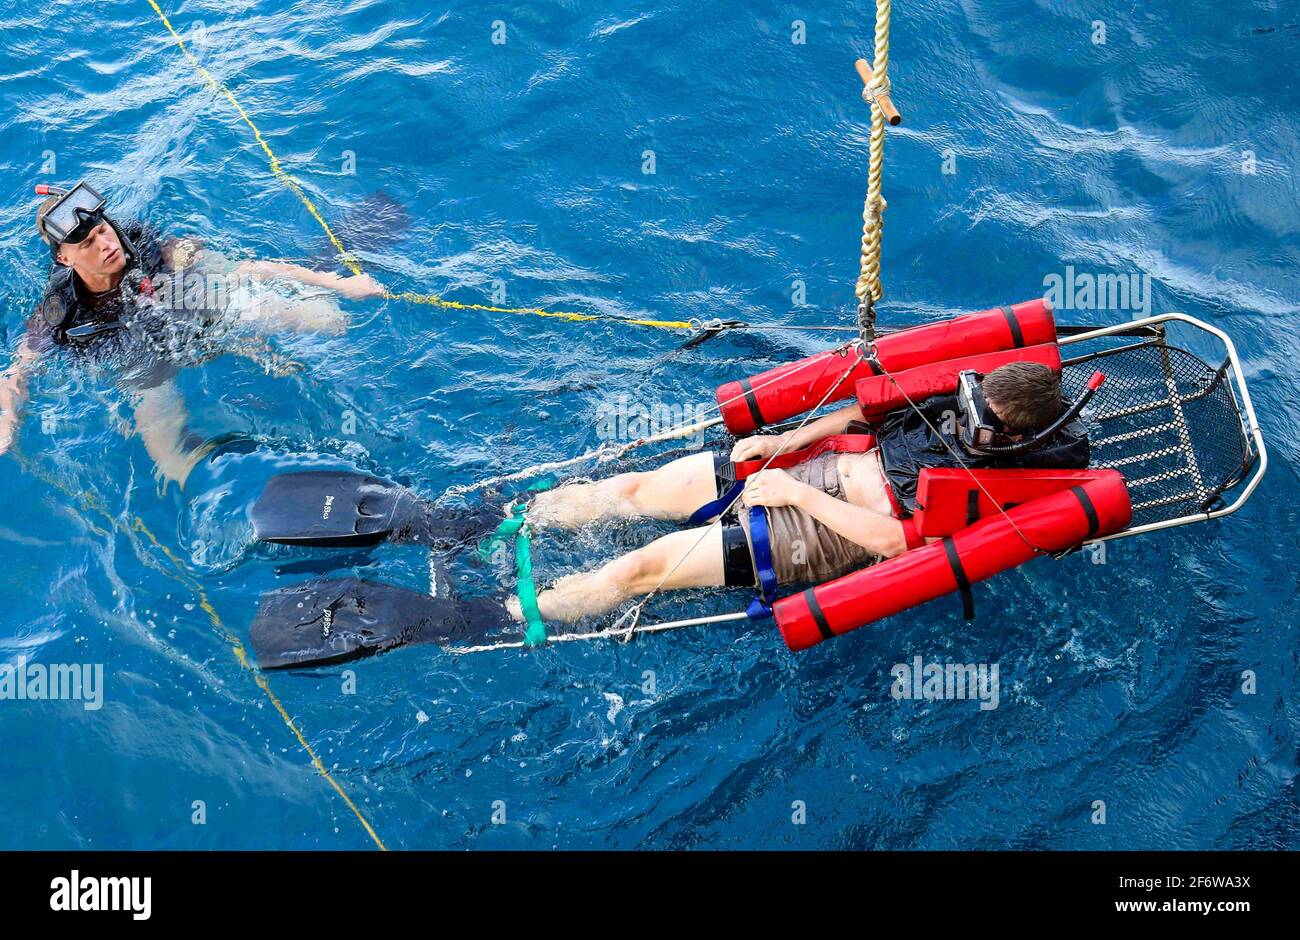 PORT MORESBY, Papua-Neuguinea (Nov 17, 2018) Seaman Andrew Johnstone, aus Charleston, S. C. , hält einen simulierten Patienten auf einer Bahre stabil Stockfoto